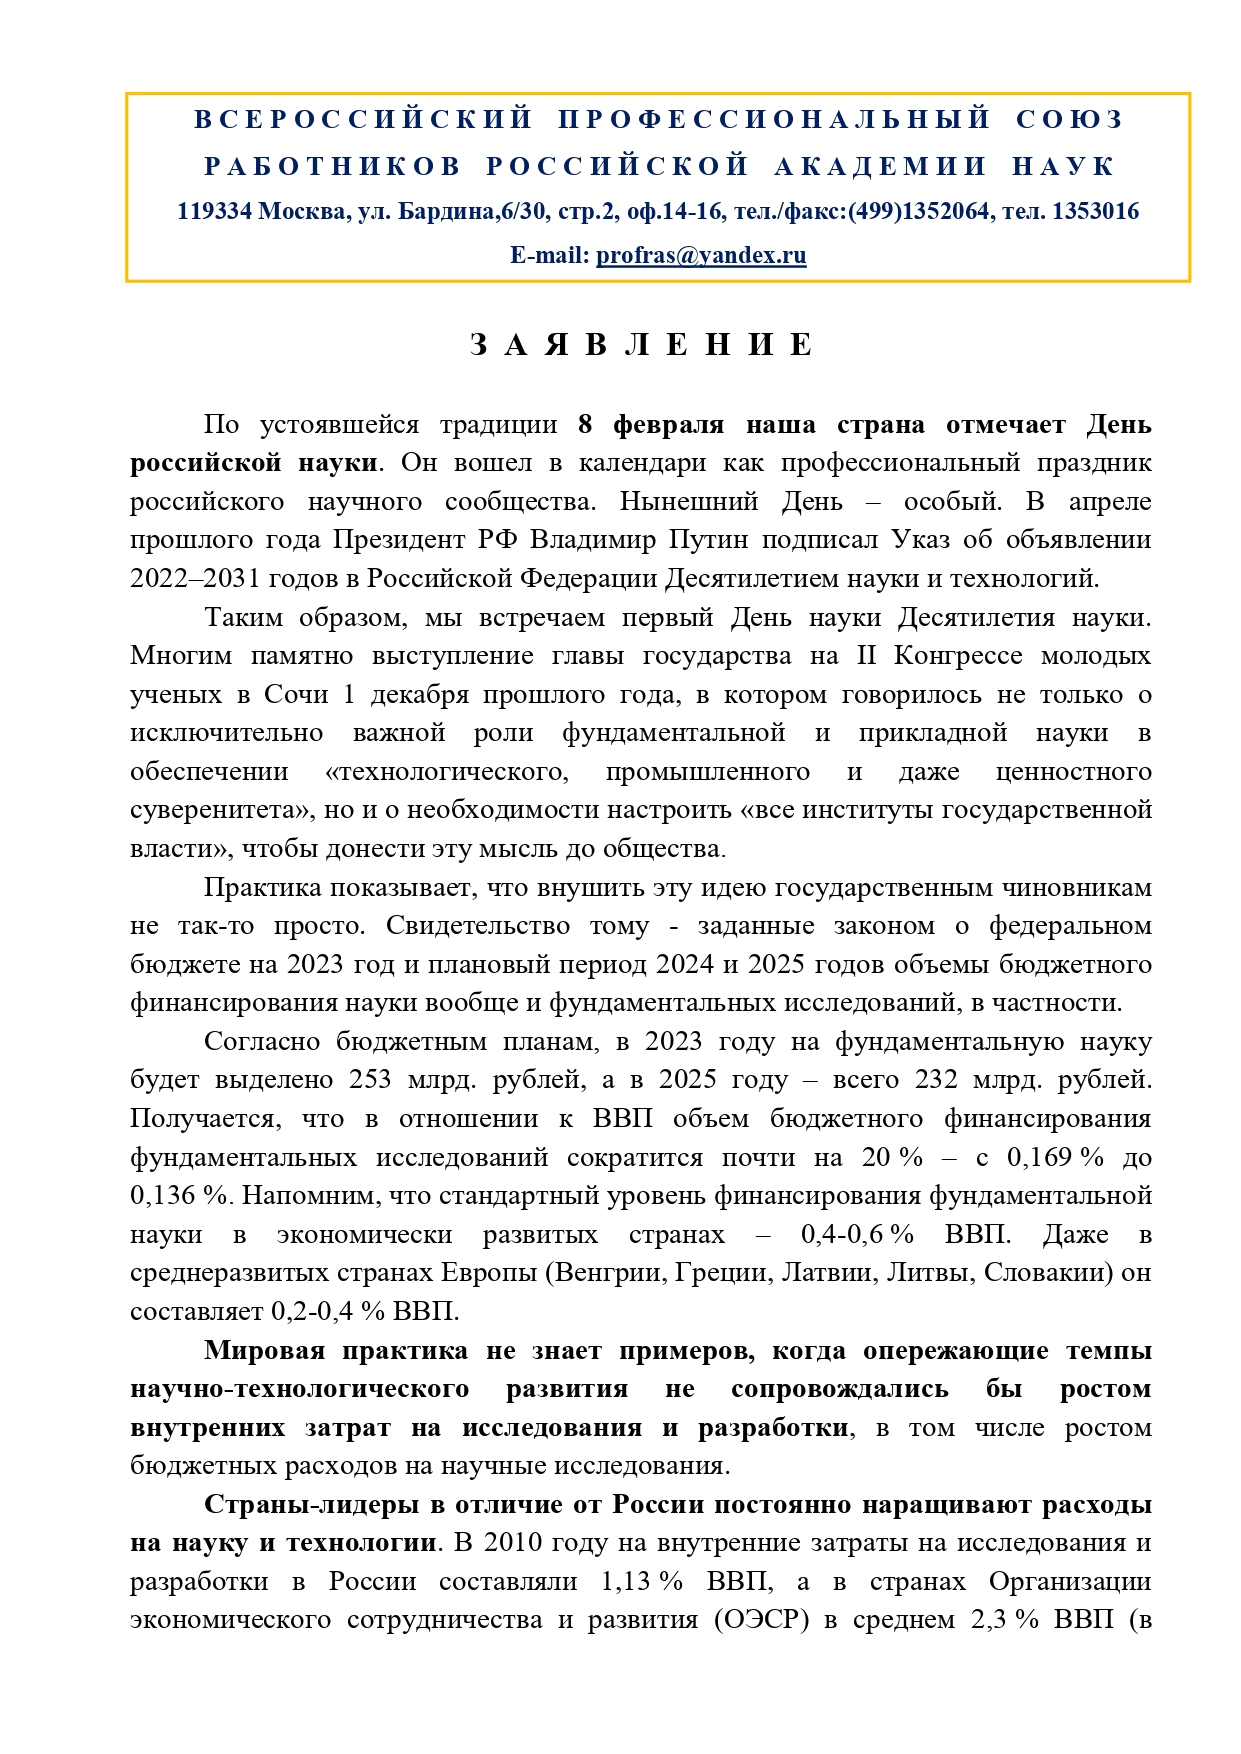 Заявление ко Дню науки 2023 Профсоюз работников РАН page 0001